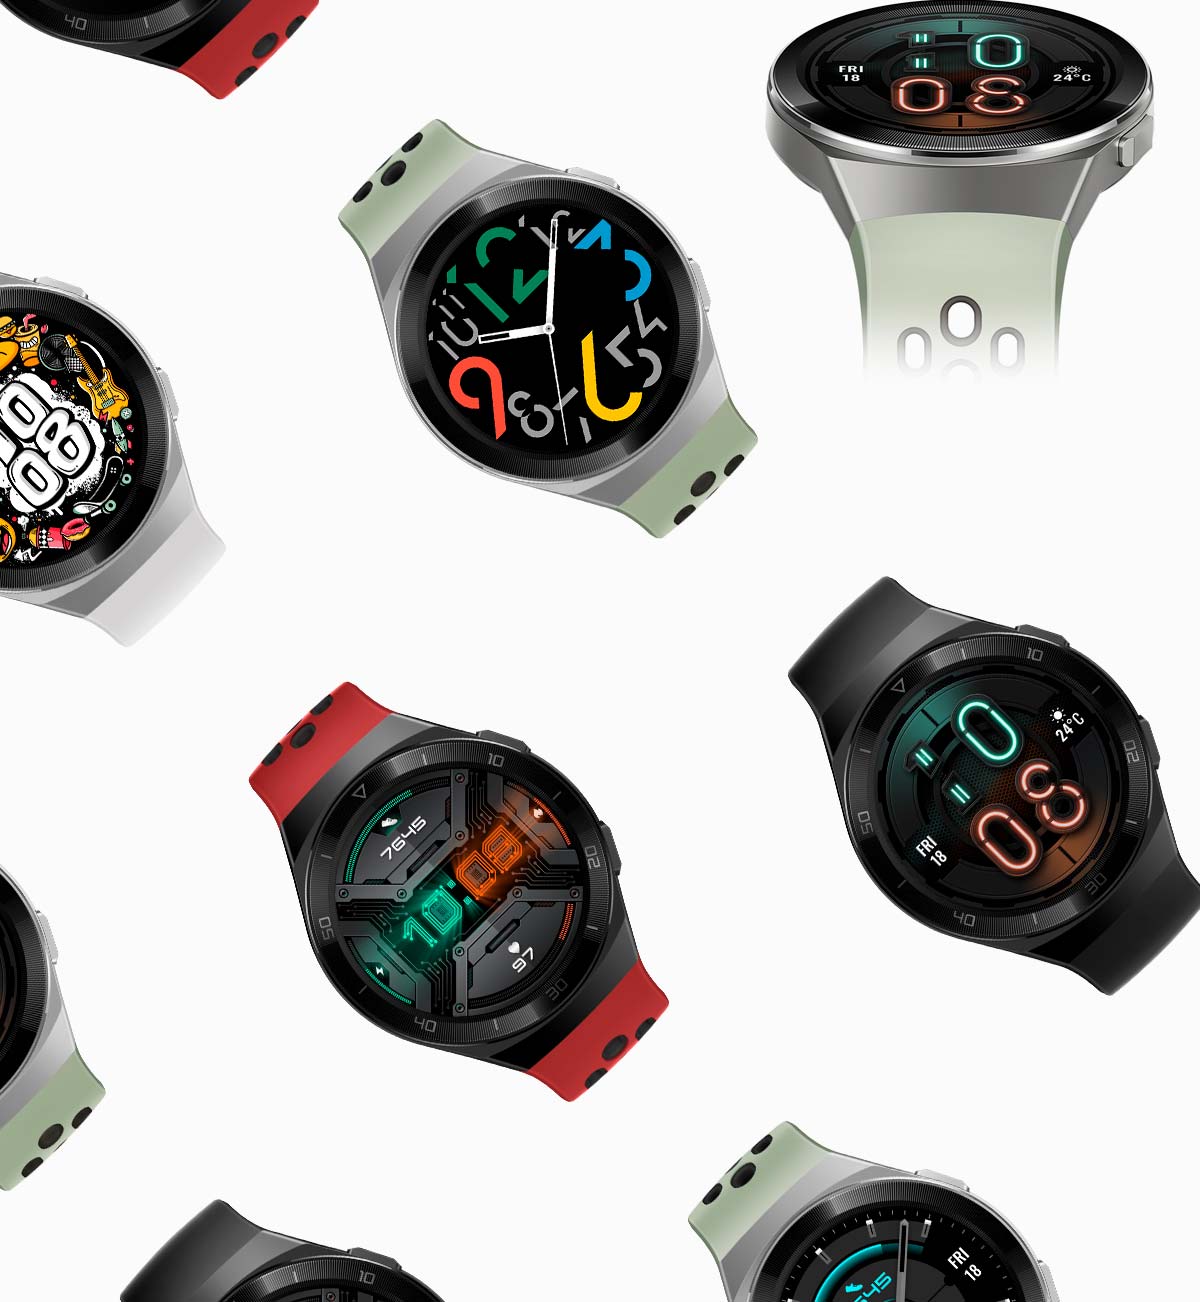 En TodoMountainBike: Huawei Watch GT 2e, un reloj inteligente con 2 semanas de autonomía y hasta 100 deportes distintos